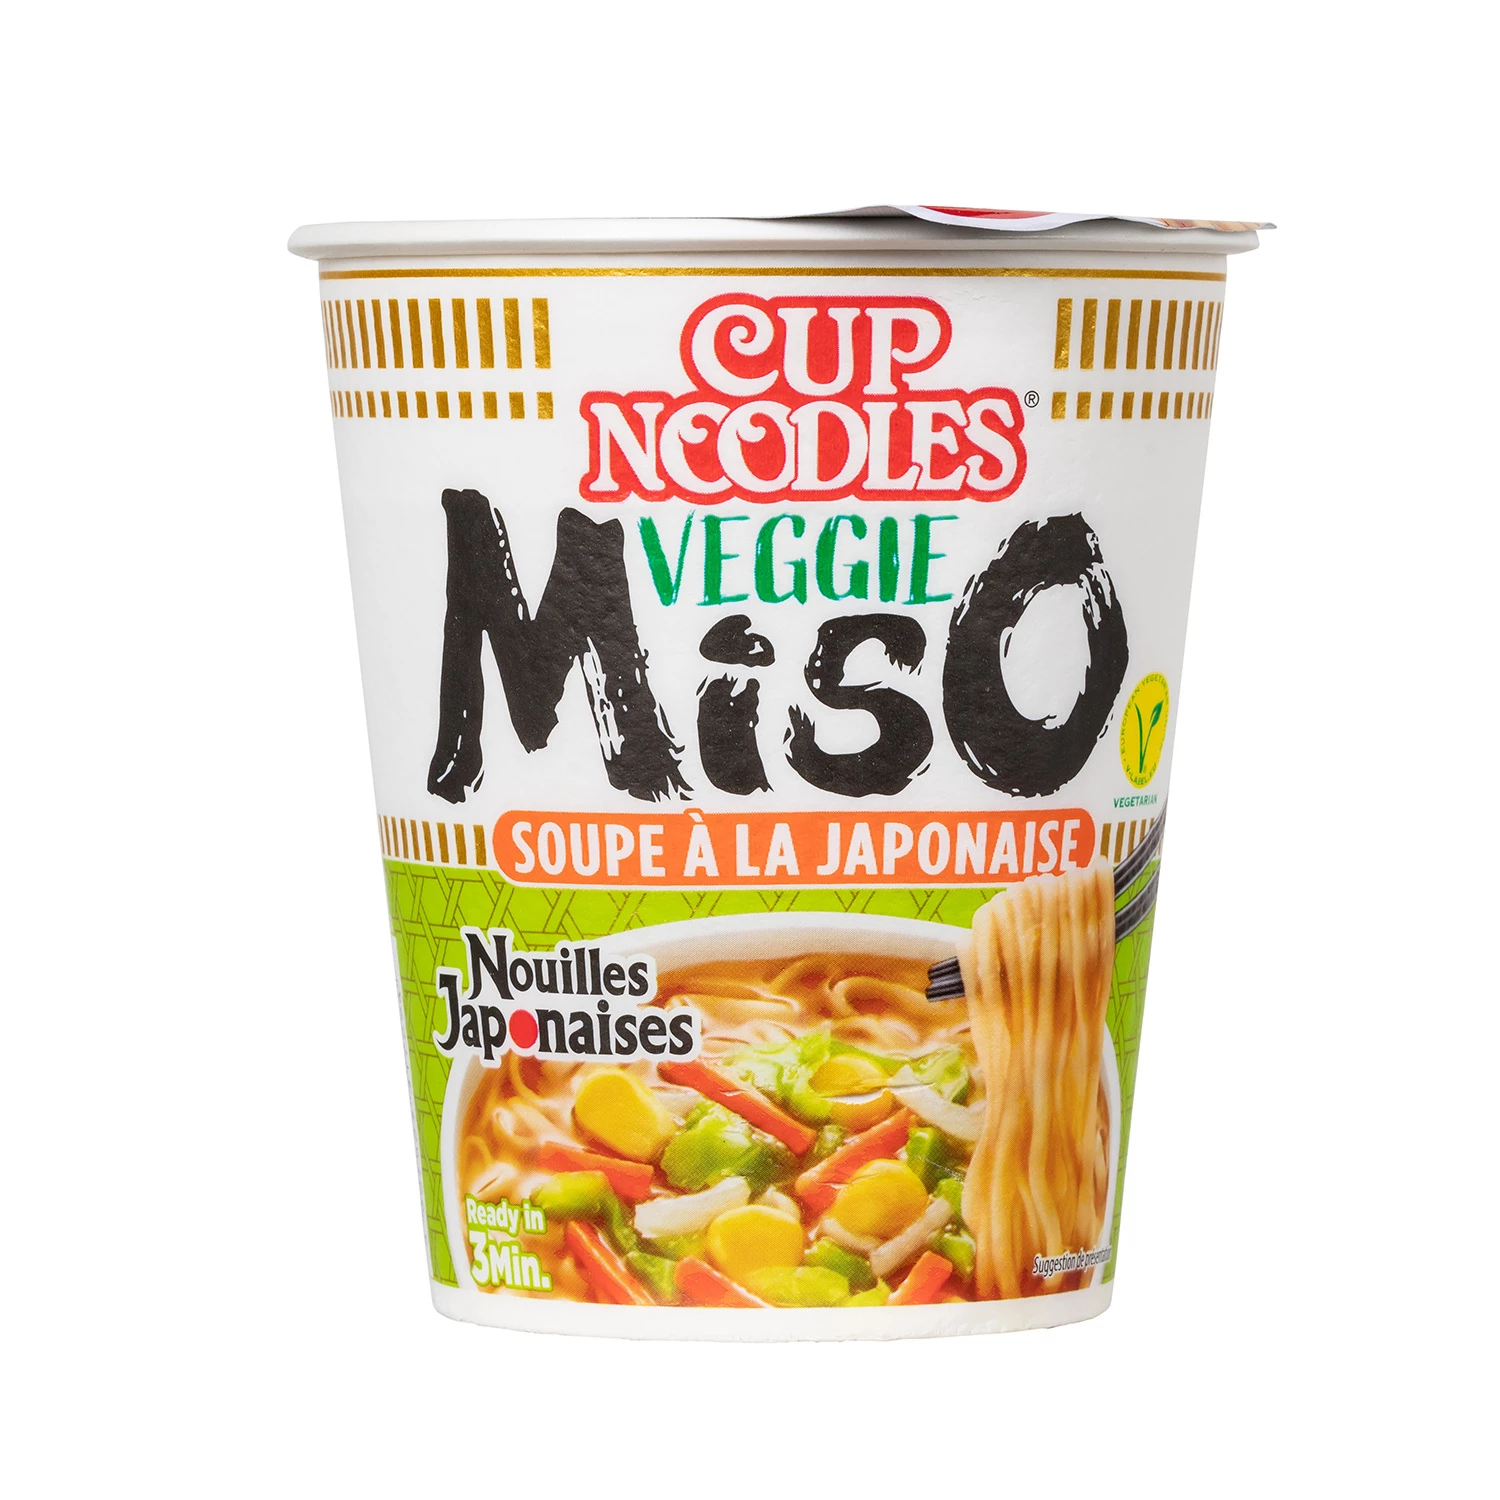 Cupnoedels miso-vegetarische smaak - NISSIN